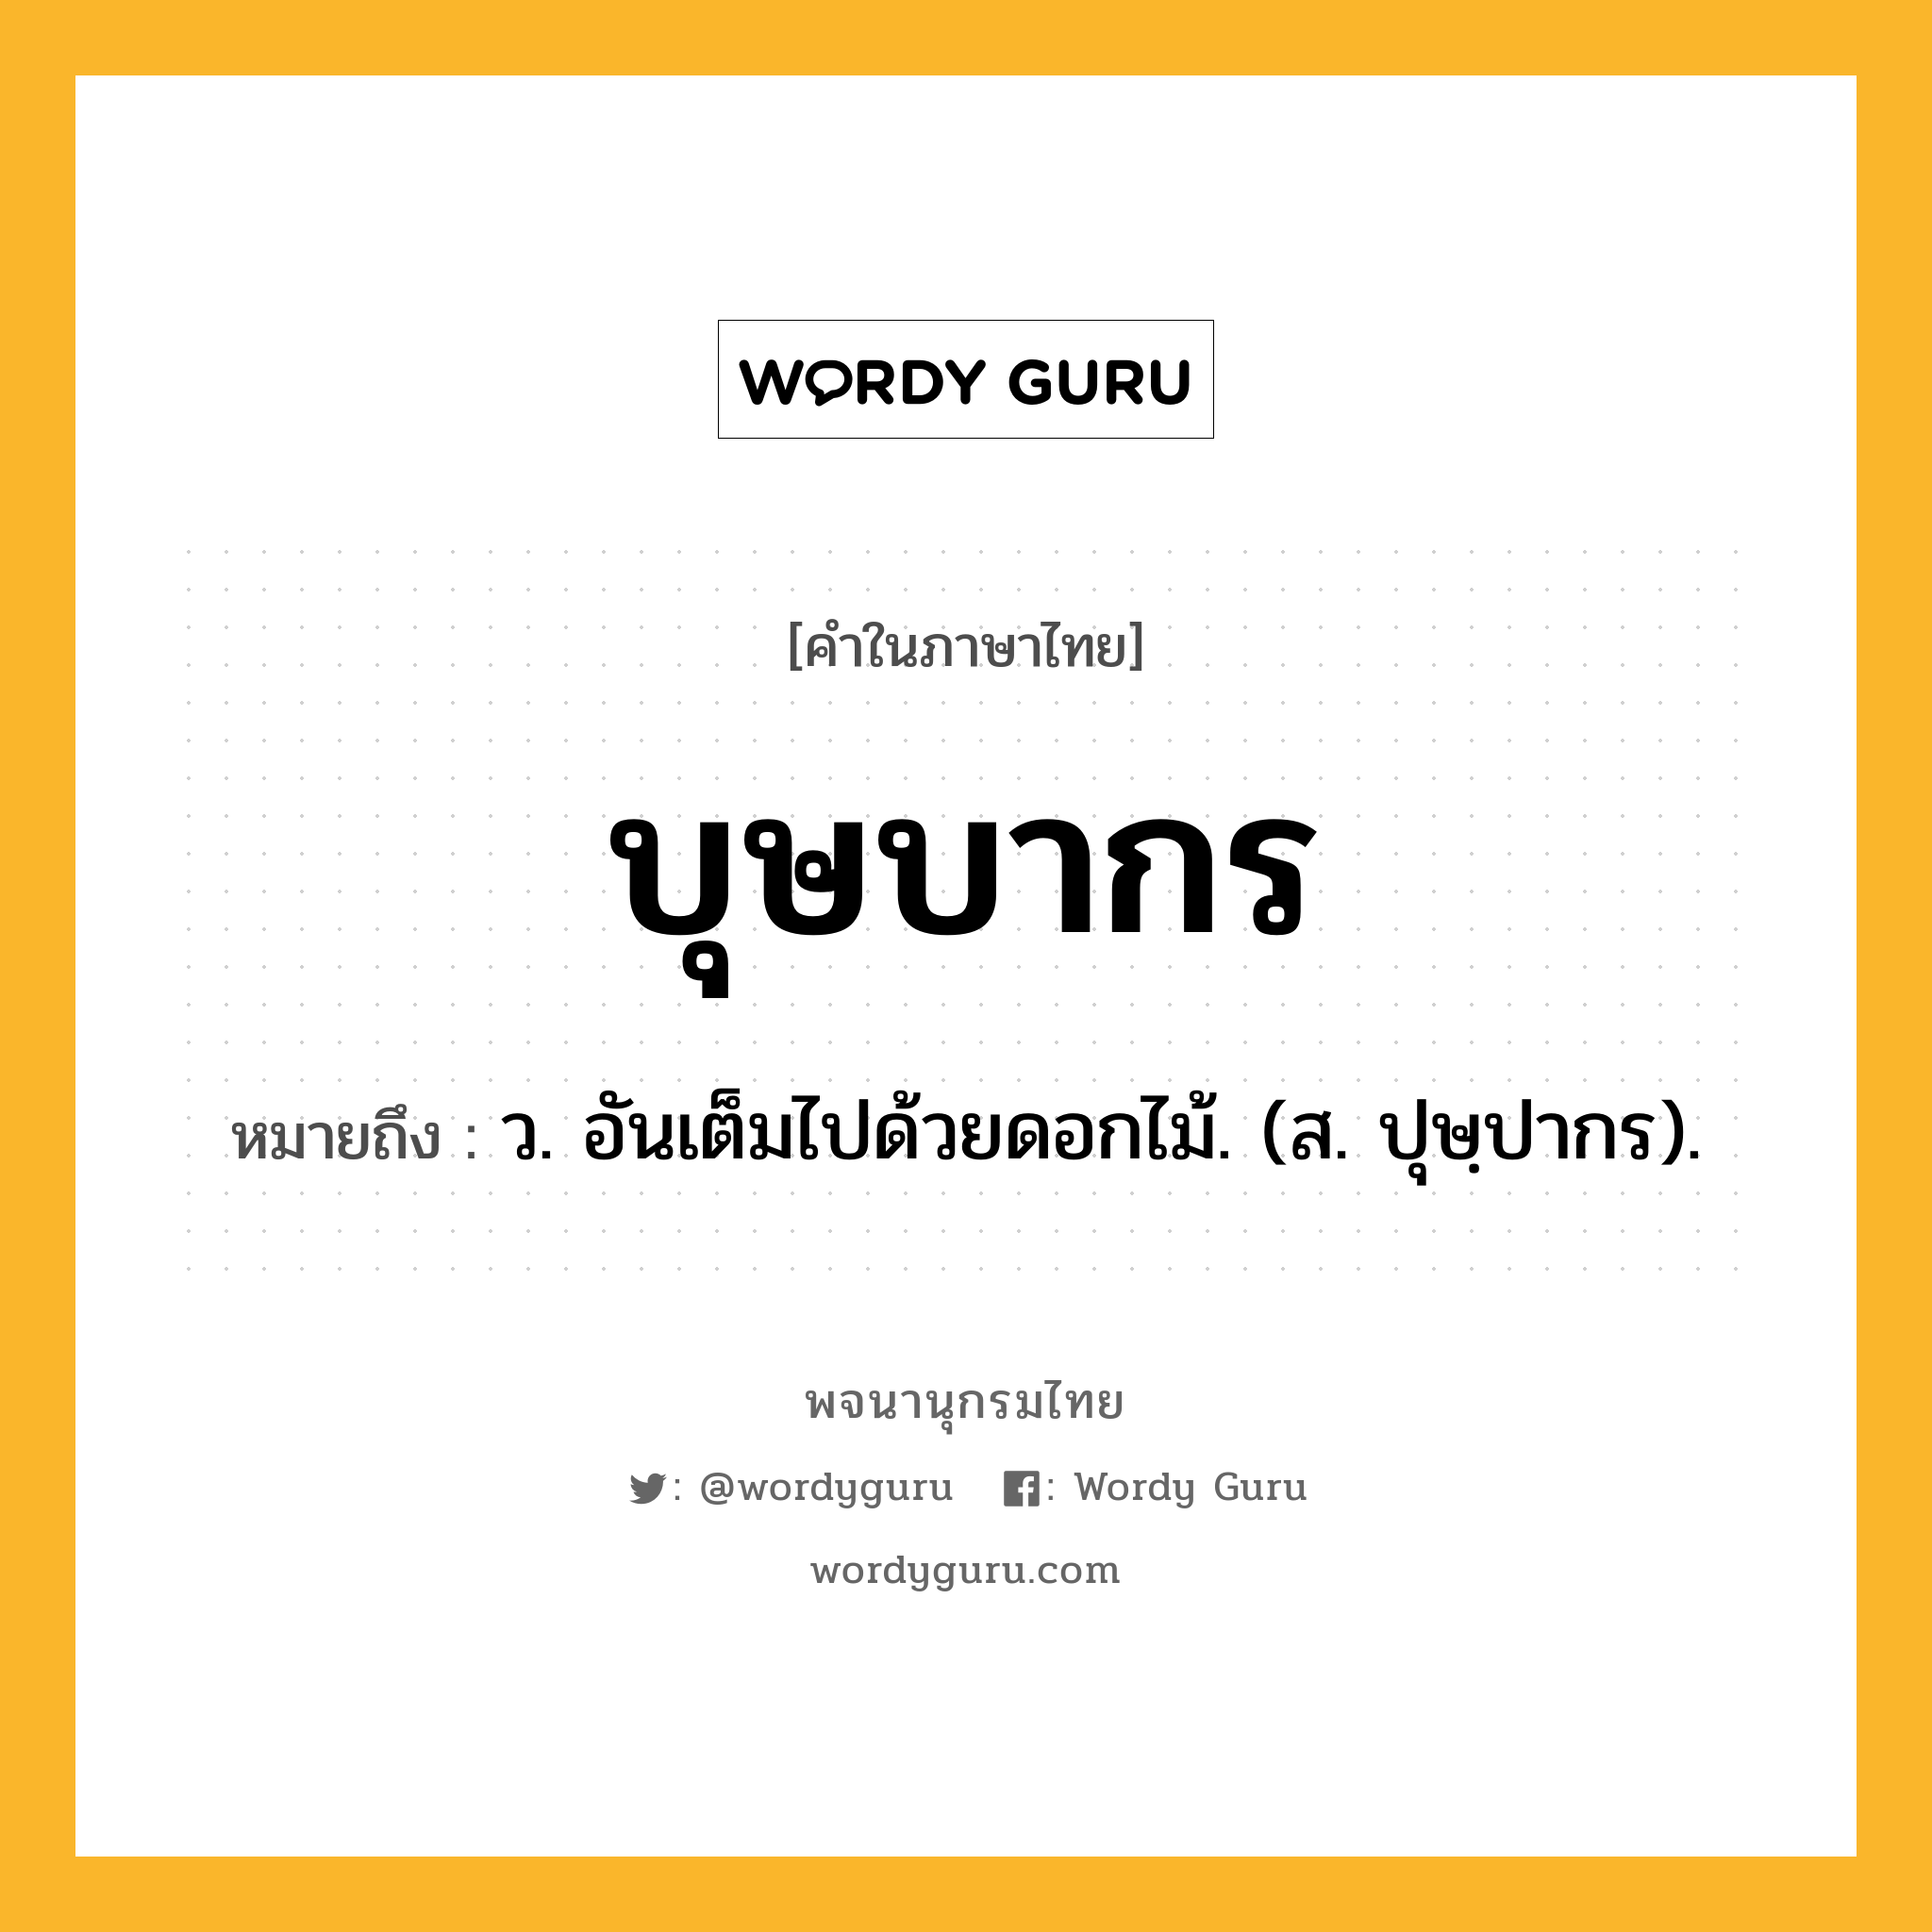 บุษบากร ความหมาย หมายถึงอะไร?, คำในภาษาไทย บุษบากร หมายถึง ว. อันเต็มไปด้วยดอกไม้. (ส. ปุษฺปากร).